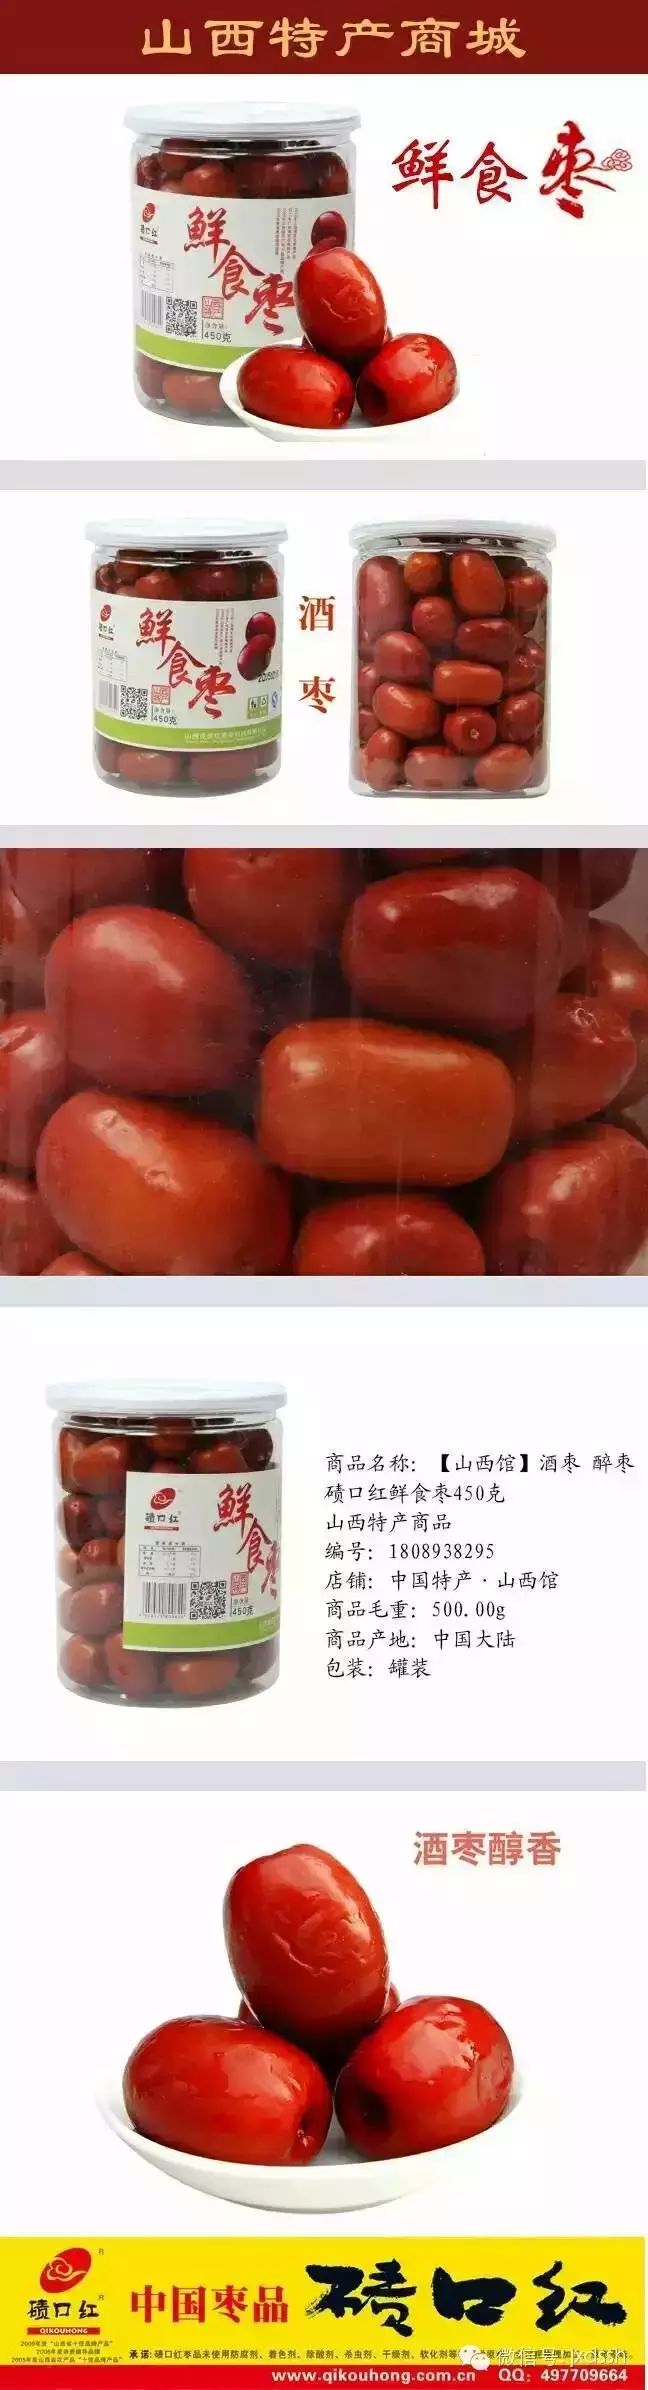 中国枣品碛口红 绿色健康伴您行